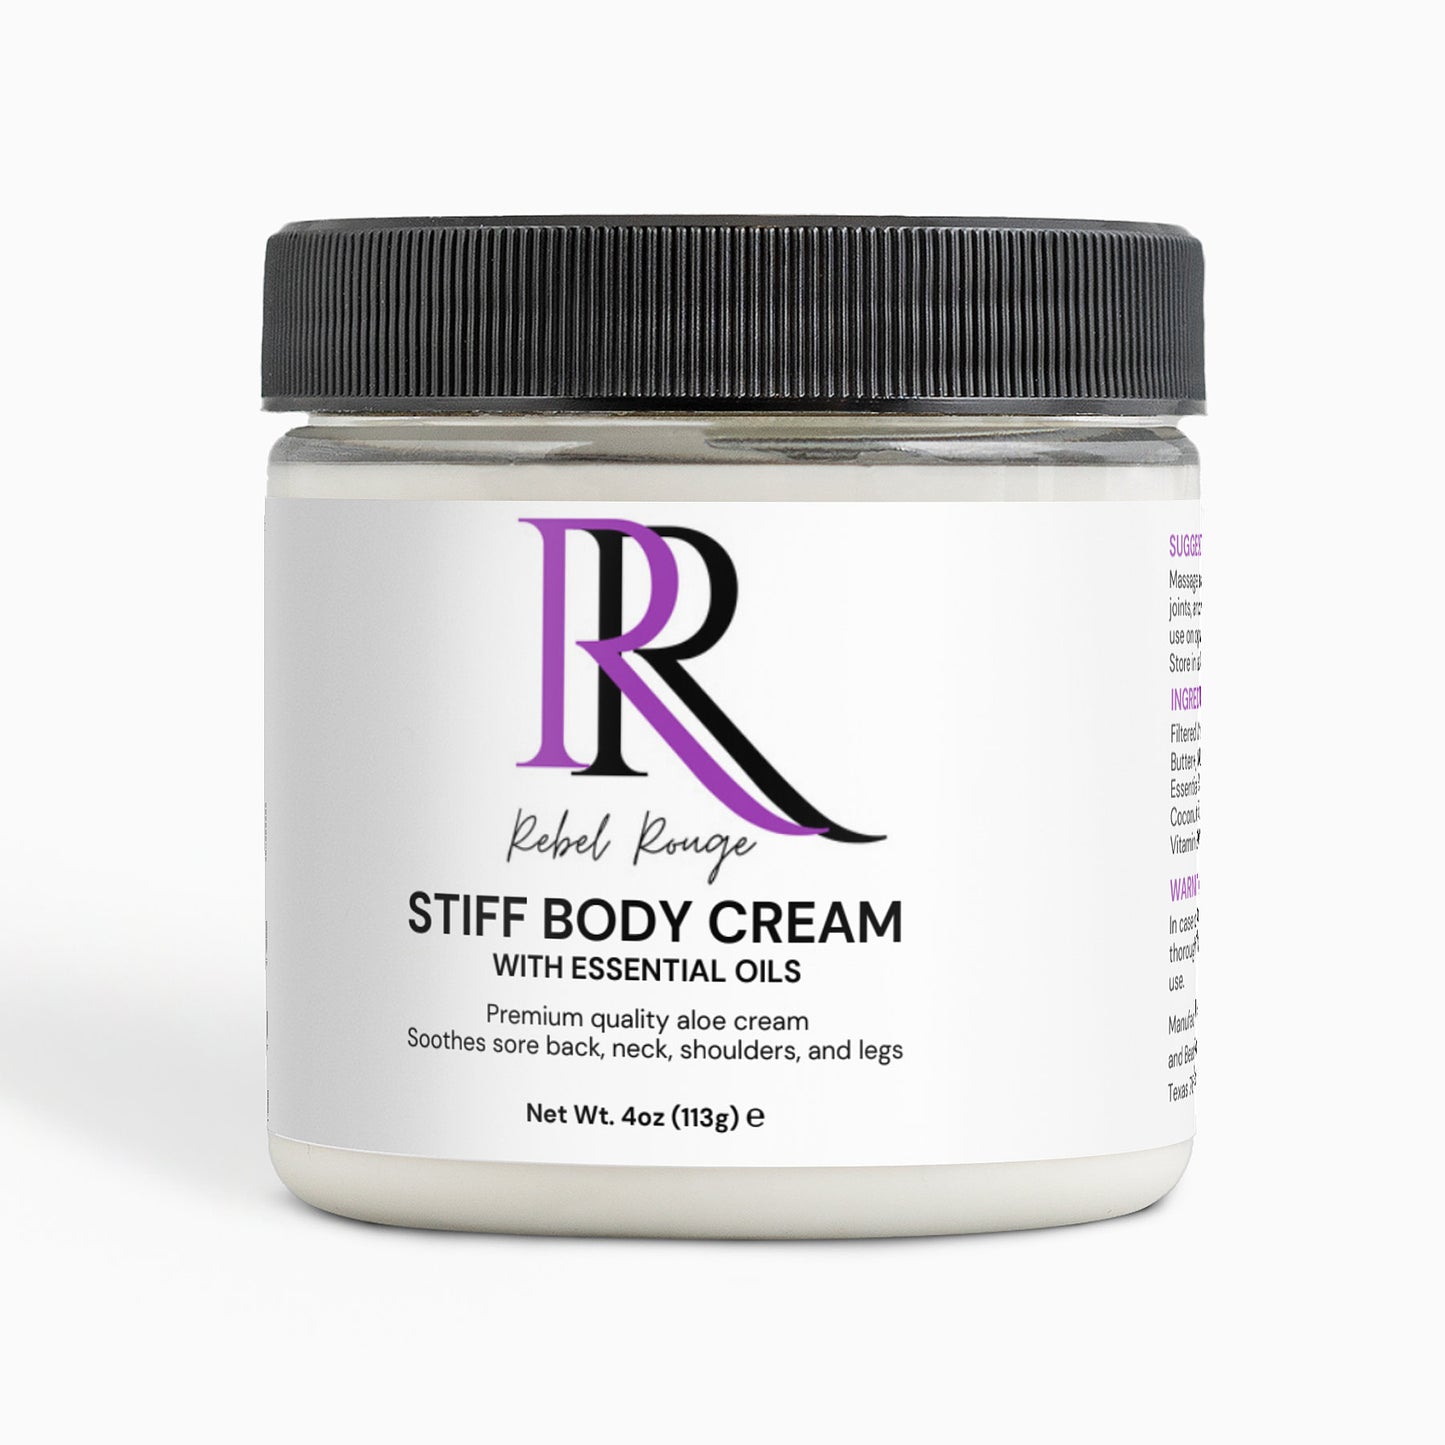 Stiff Body Cream